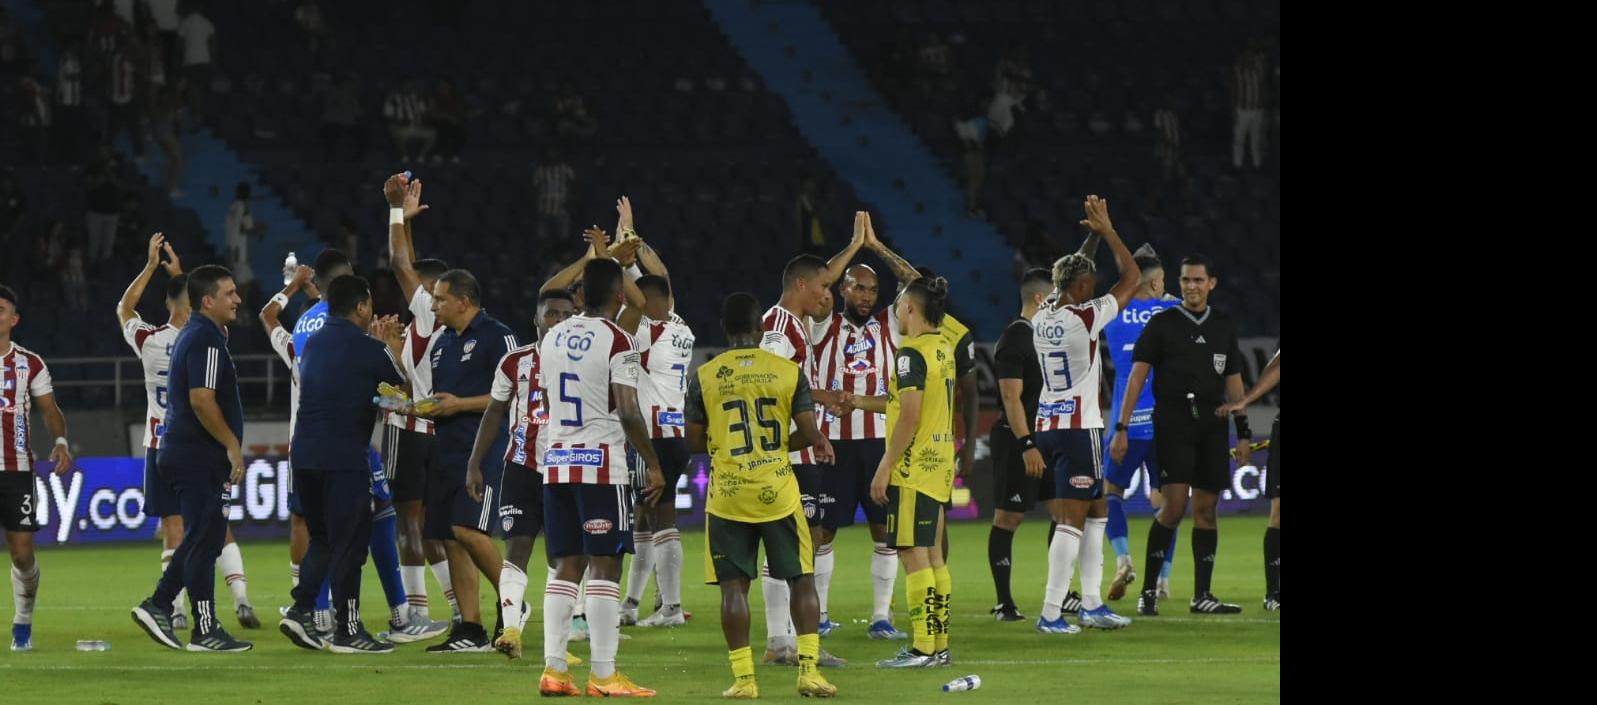 Los jugadores del Junior saludando a la afición en su reciente juego ante el Huila.